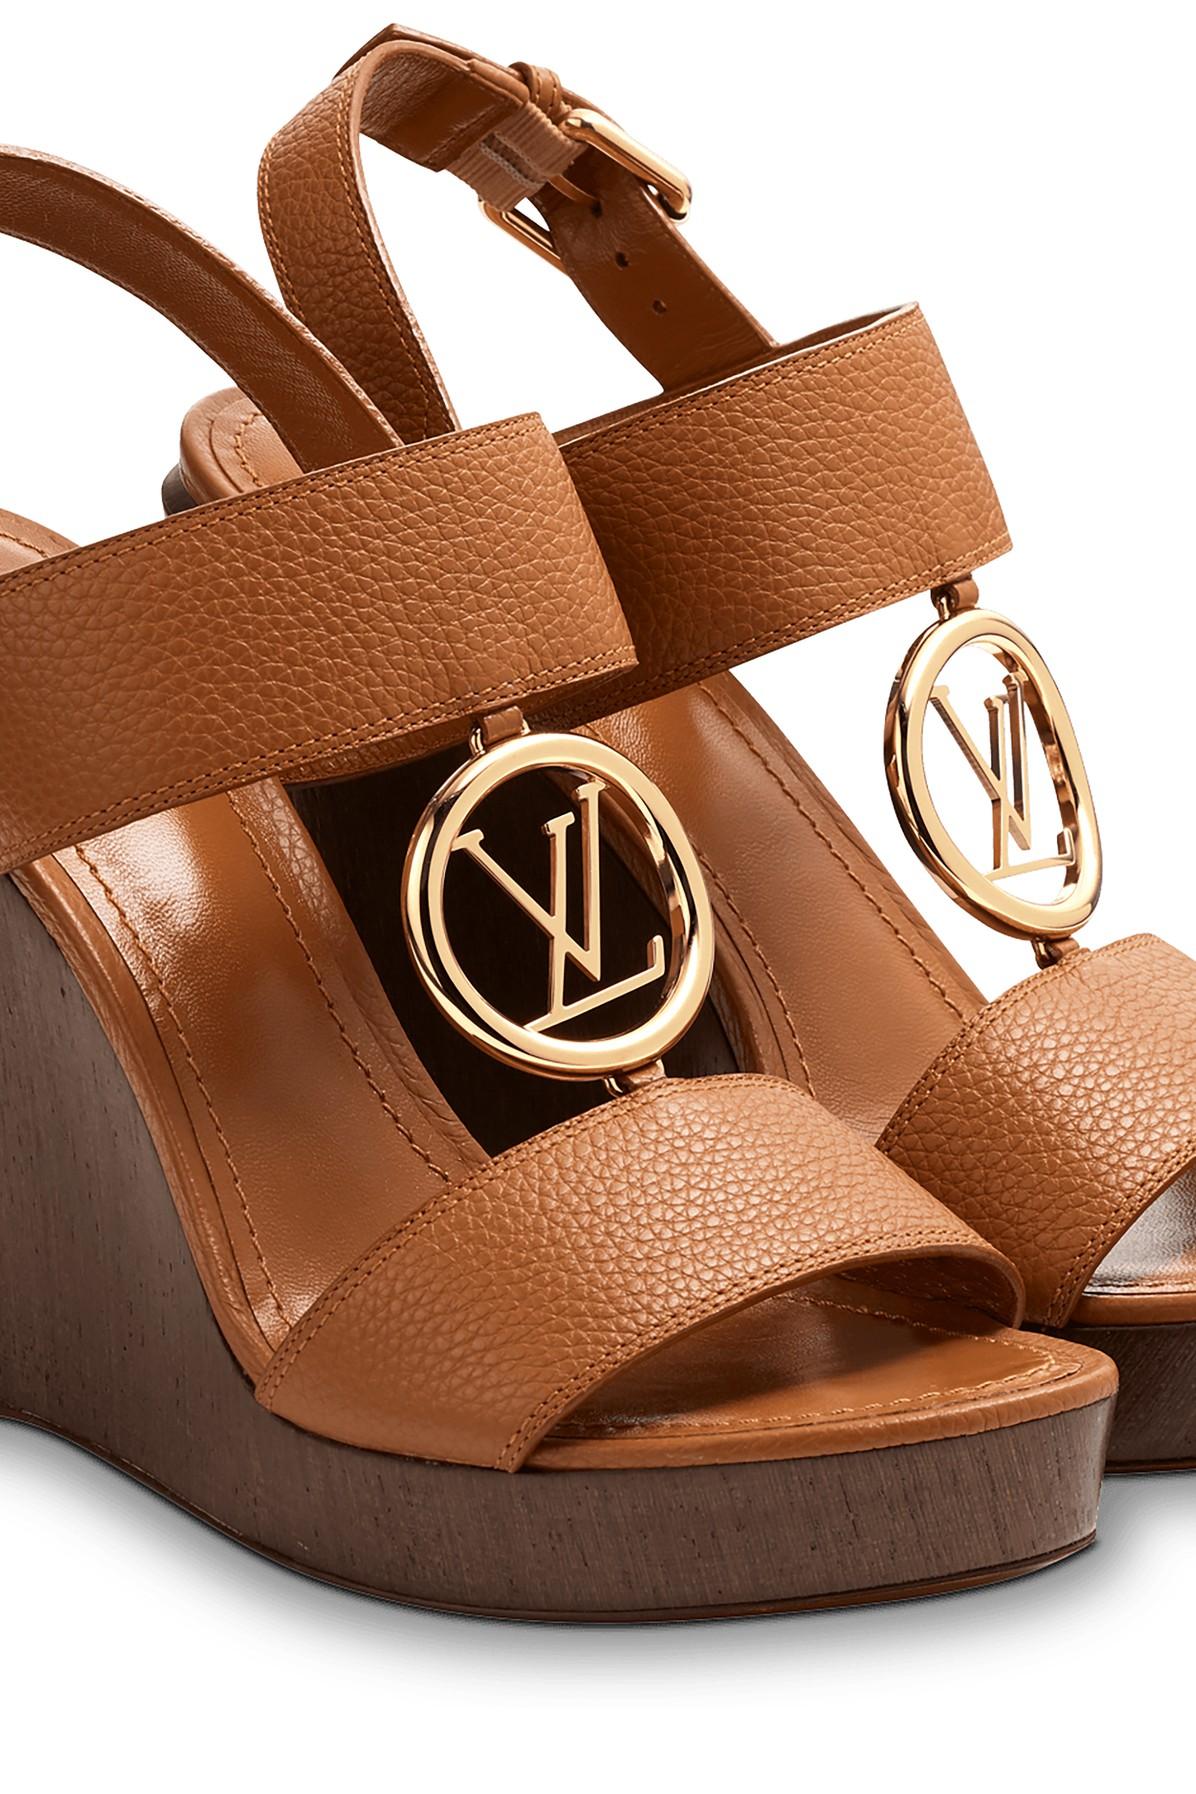 Louis Vuitton NEW Black Multicolor Wedge Sandals w/ Leather Trim